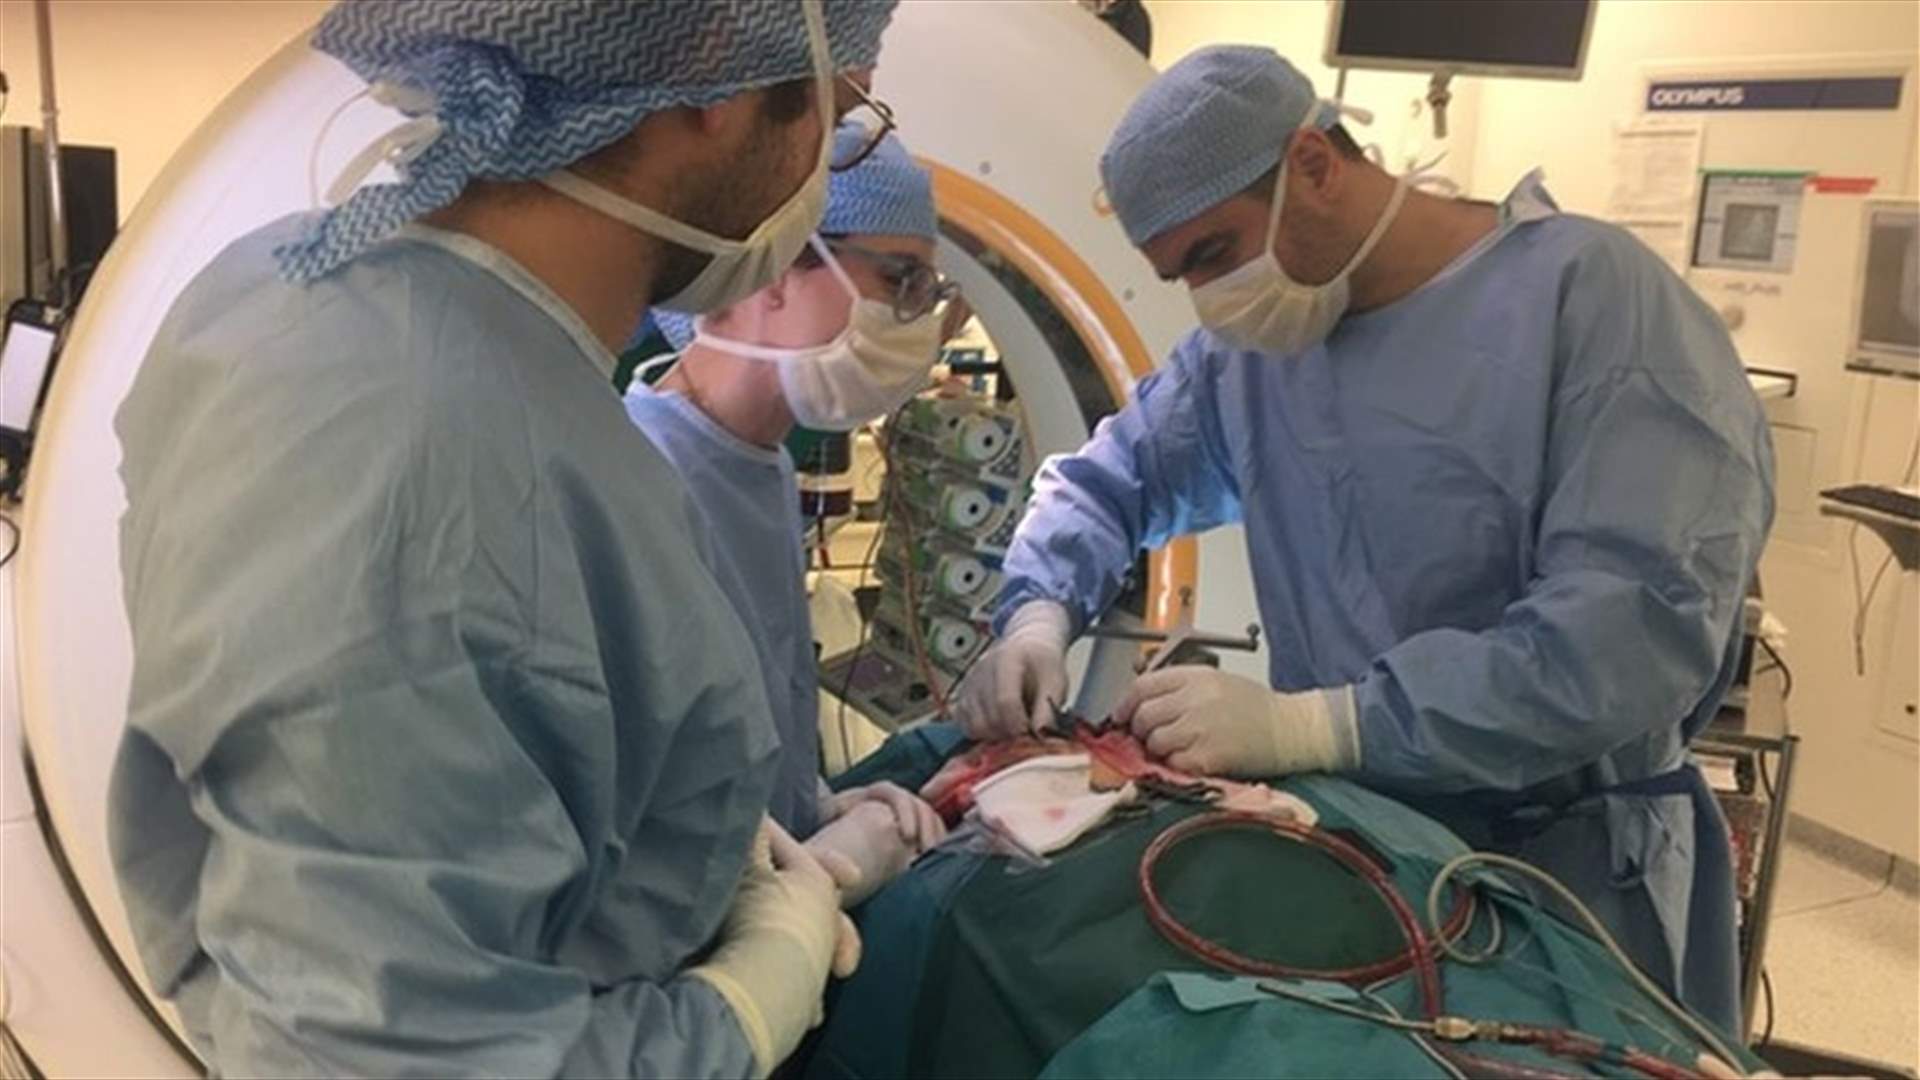 الطبيب اللبناني إيلي شوفاني ينقذ طفلاً من الشلل في عملية جراحية هي الأولى في فرنسا والعالم